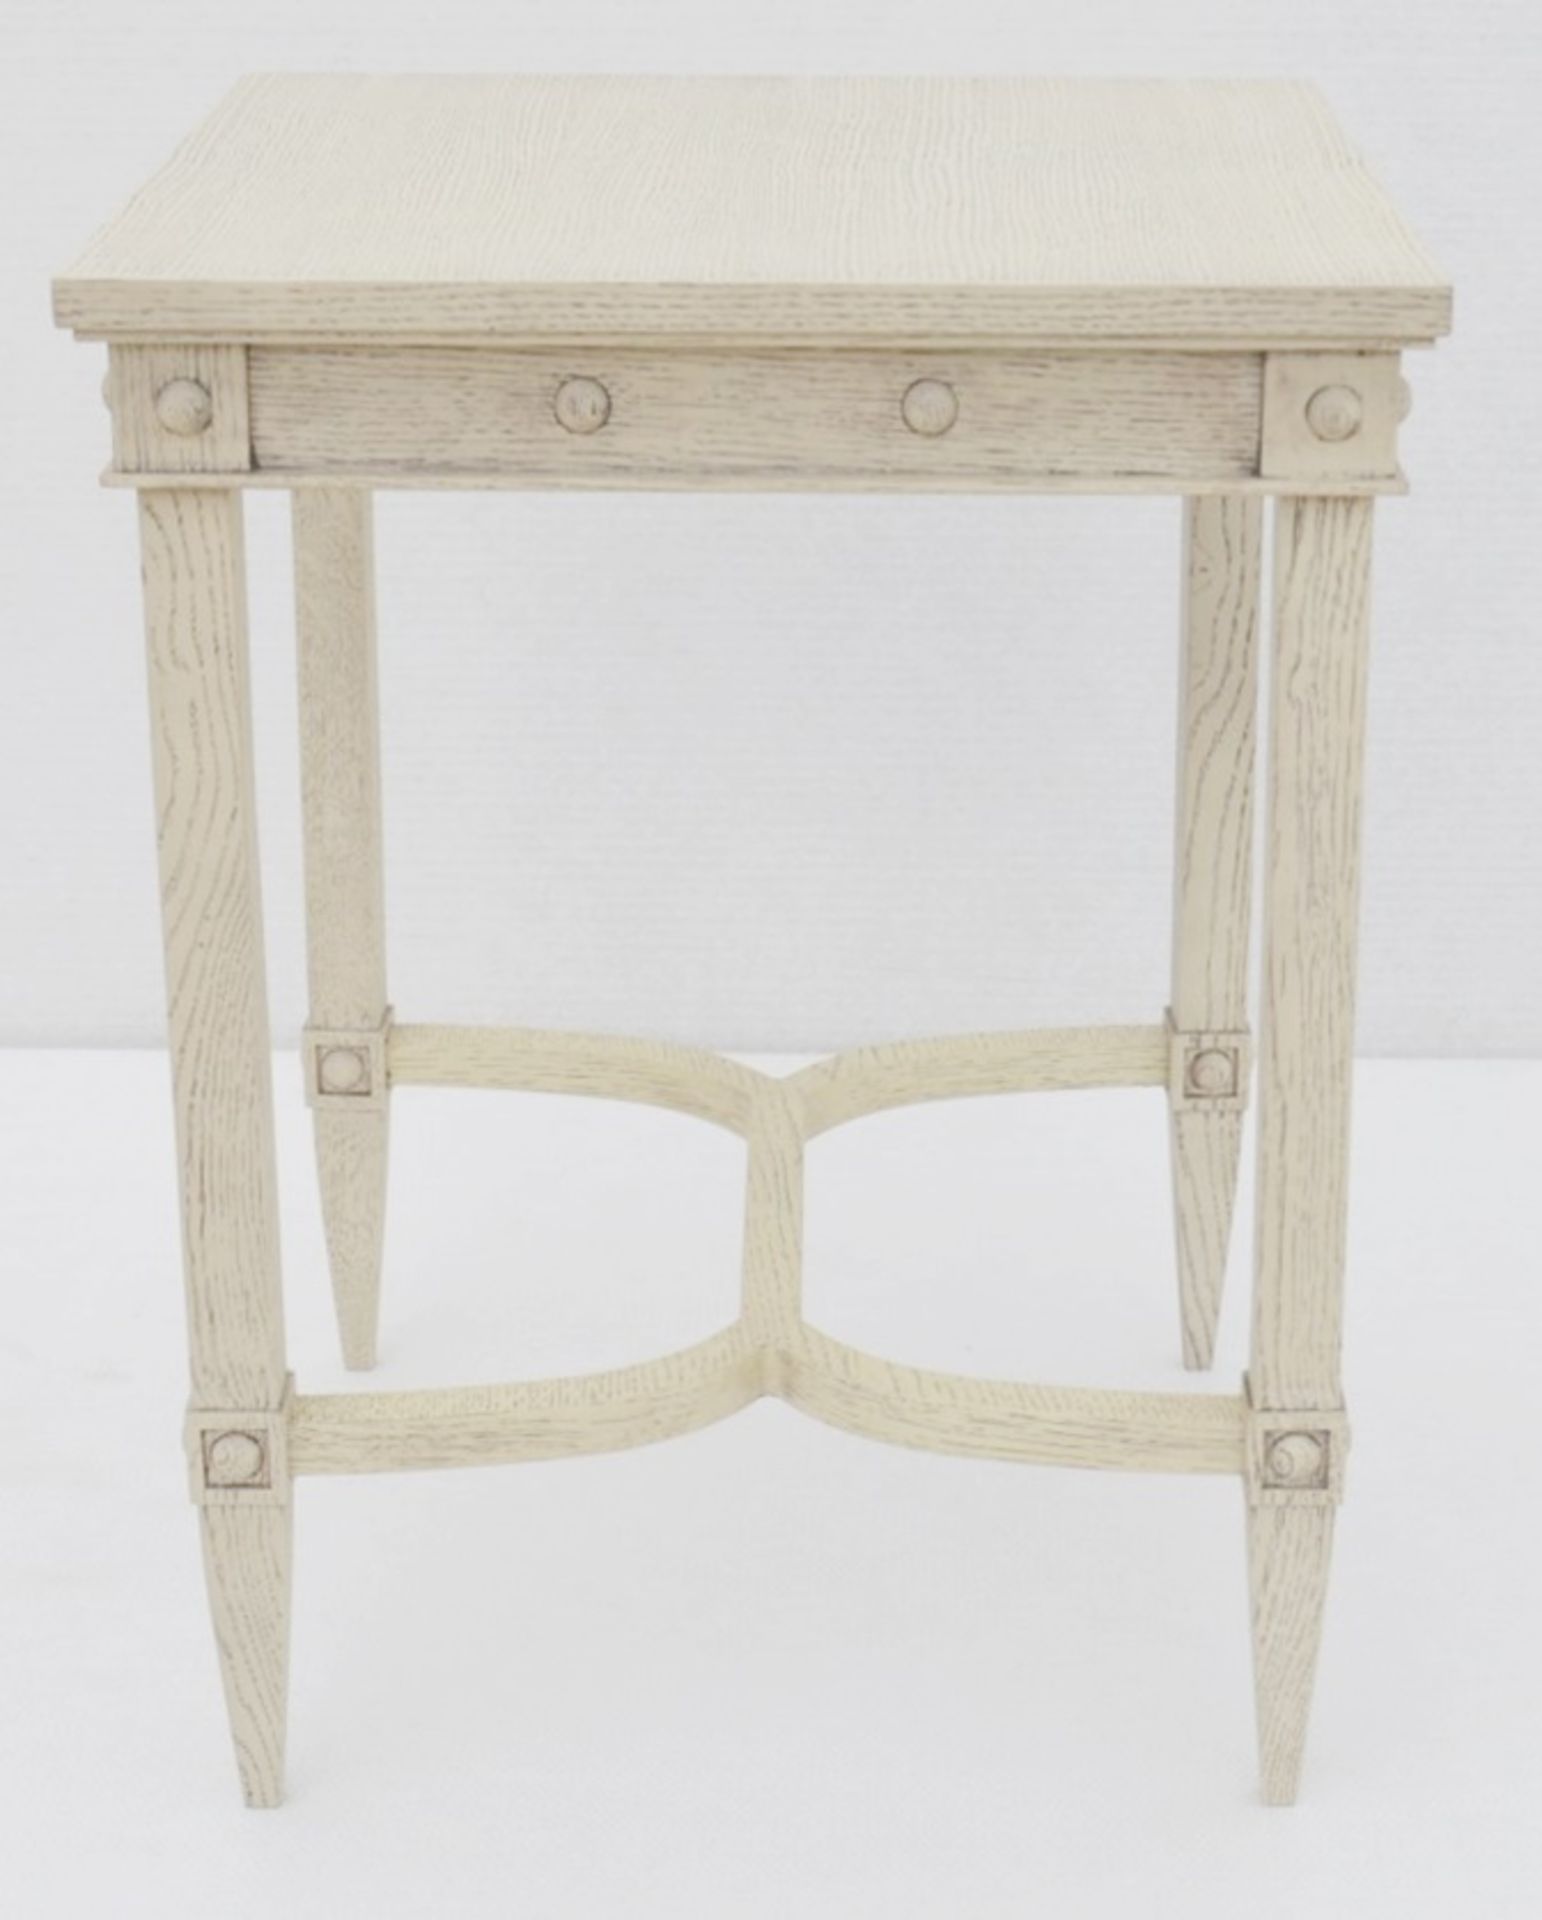 1 x JUSTIN VAN BREDA 'Thomas' Designer Georgian-inspired Occasional Table - Original RRP £1,320 - Image 8 of 8